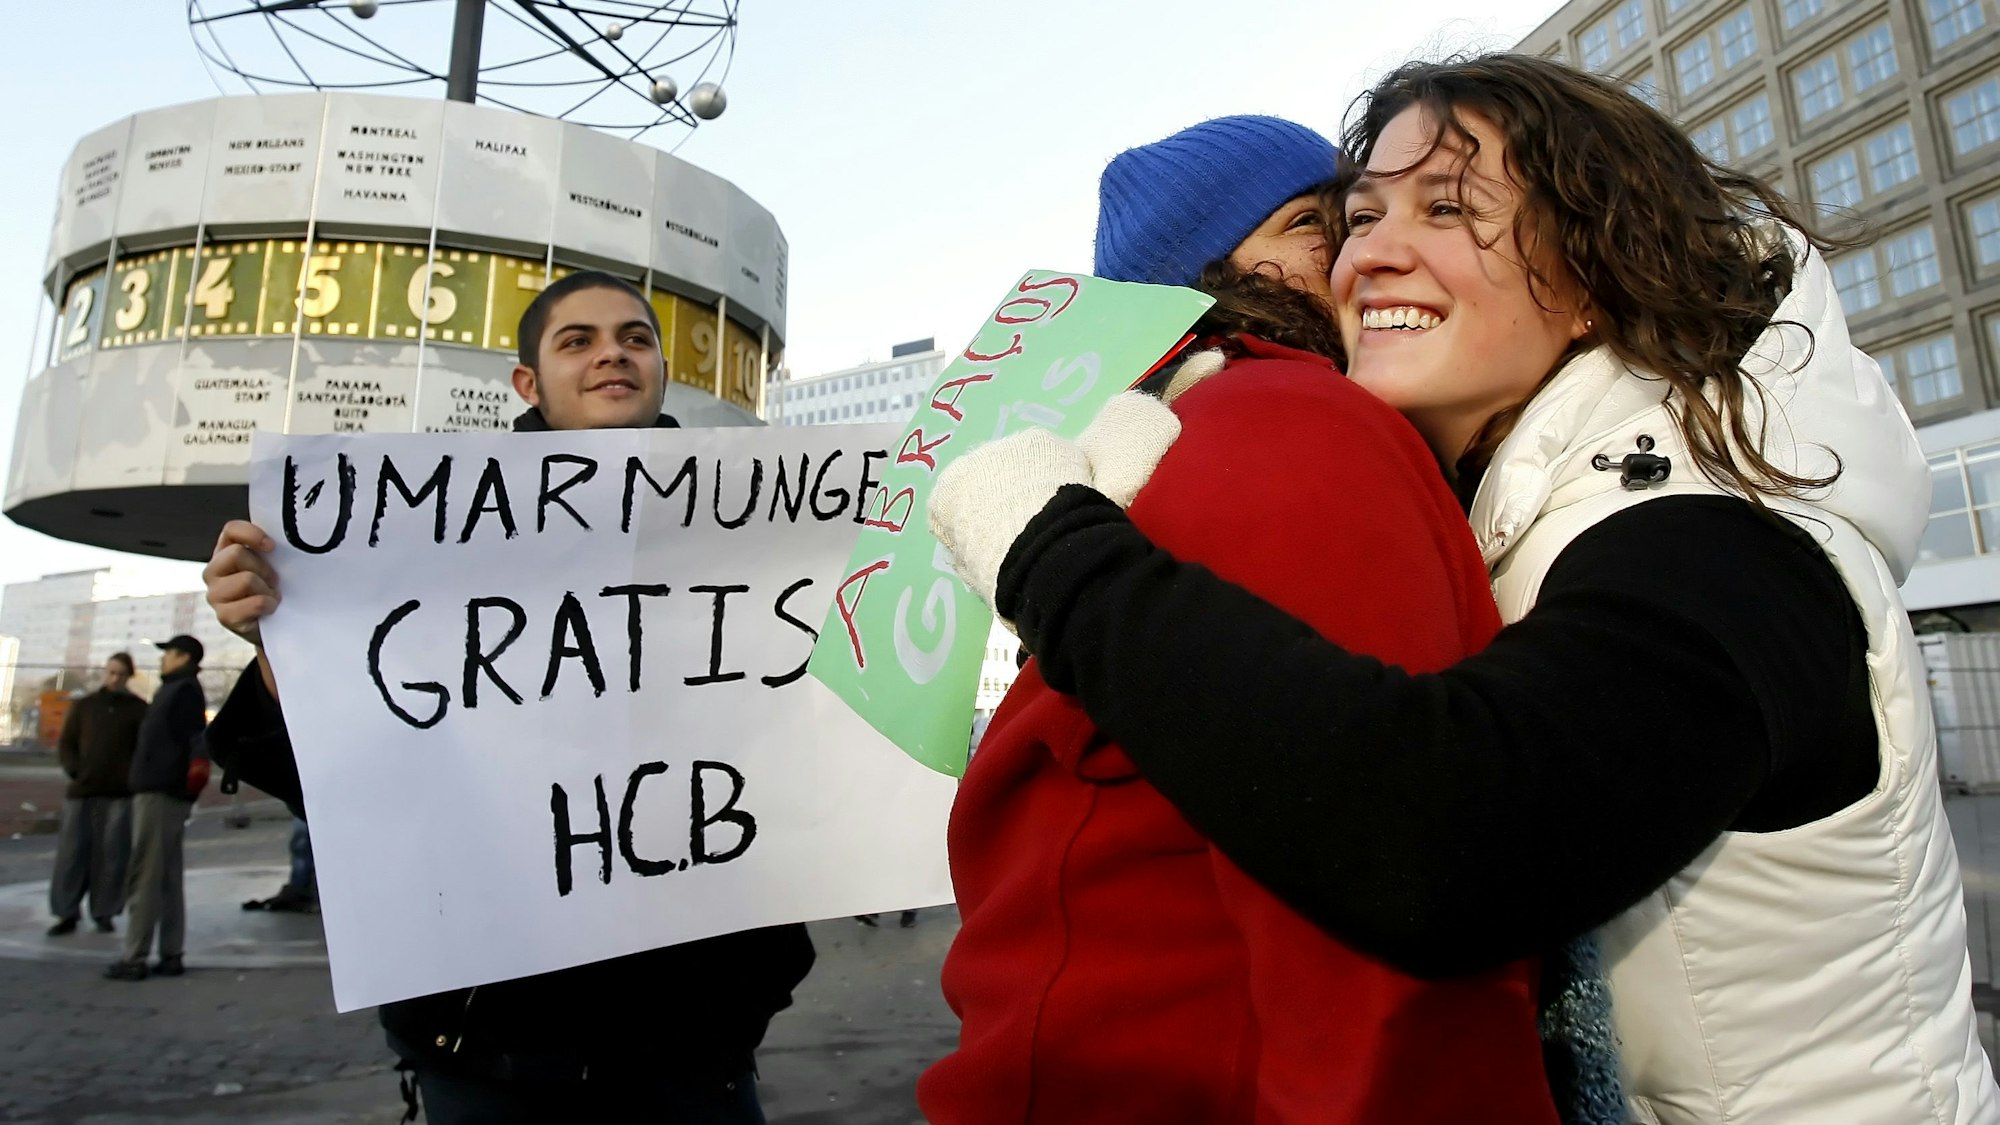 Menschen geben sich auf dem Alexanderplatz in Berlin eine Umarmung, ein weiterer hält ein Schild mit dem Text „Umarmung gratis“ hoch.